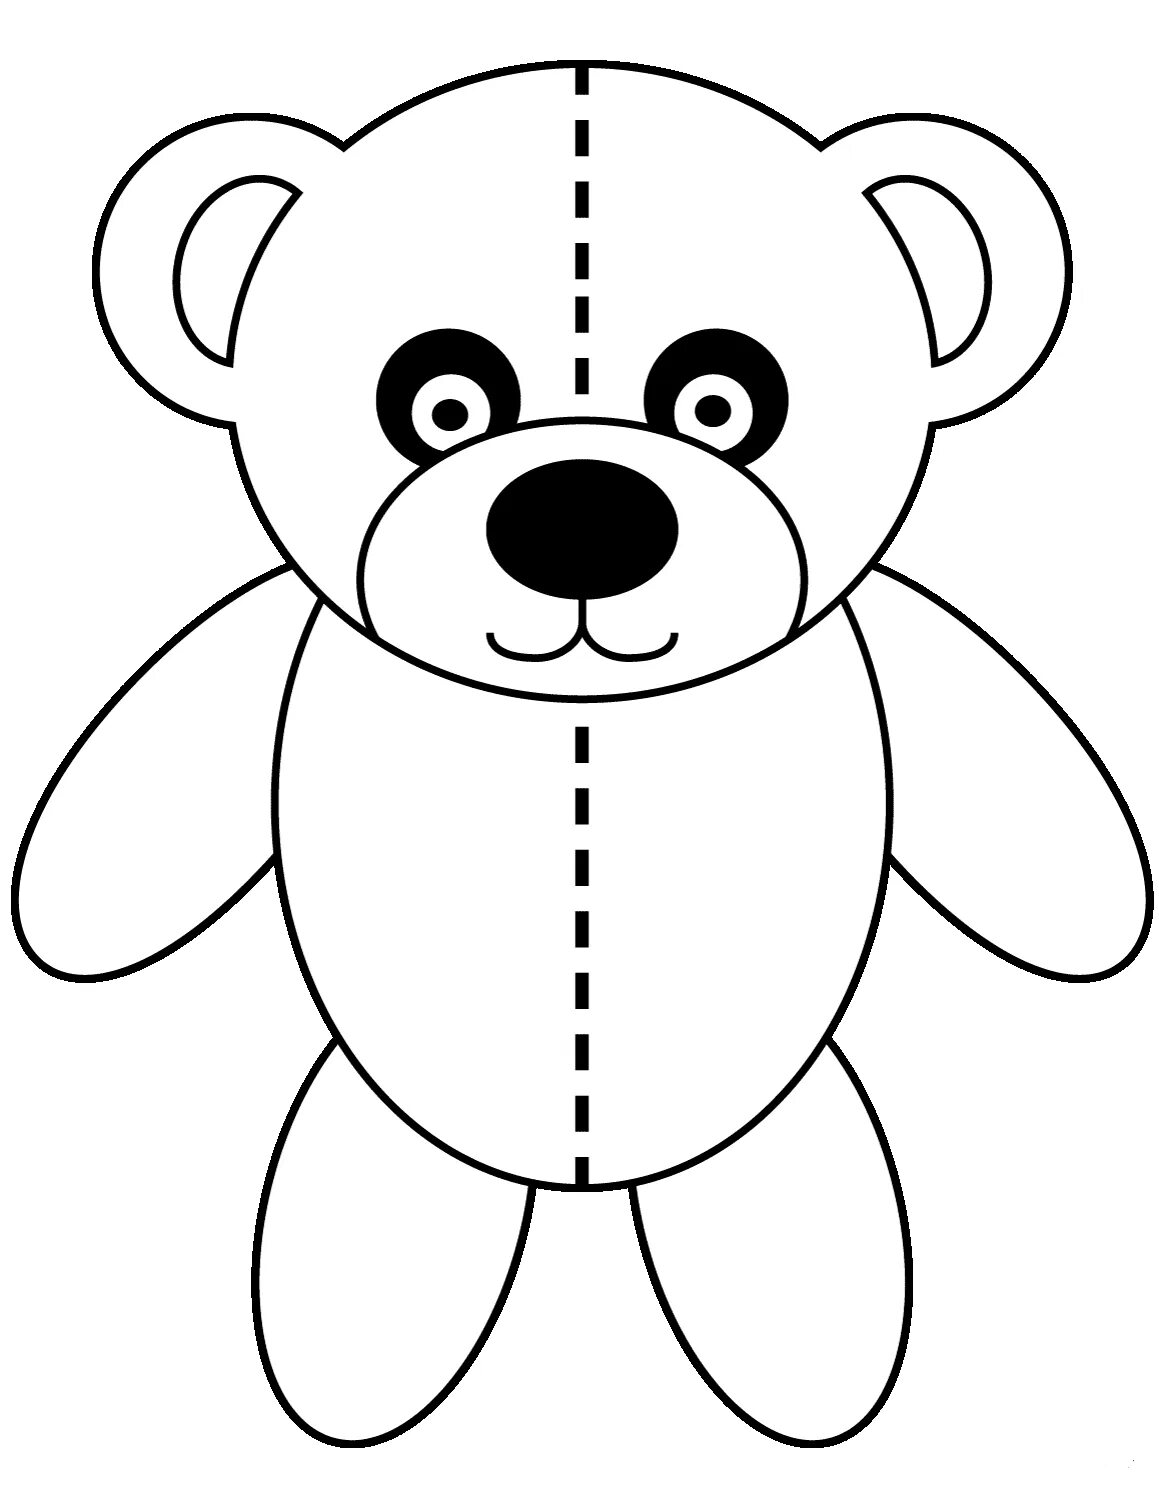 Медвежонок раскраска для детей. Медведь раскраска для детей. Раскраска "мишки". Мишка раскраска для малышей. Раскраски для детей 3 года мишки